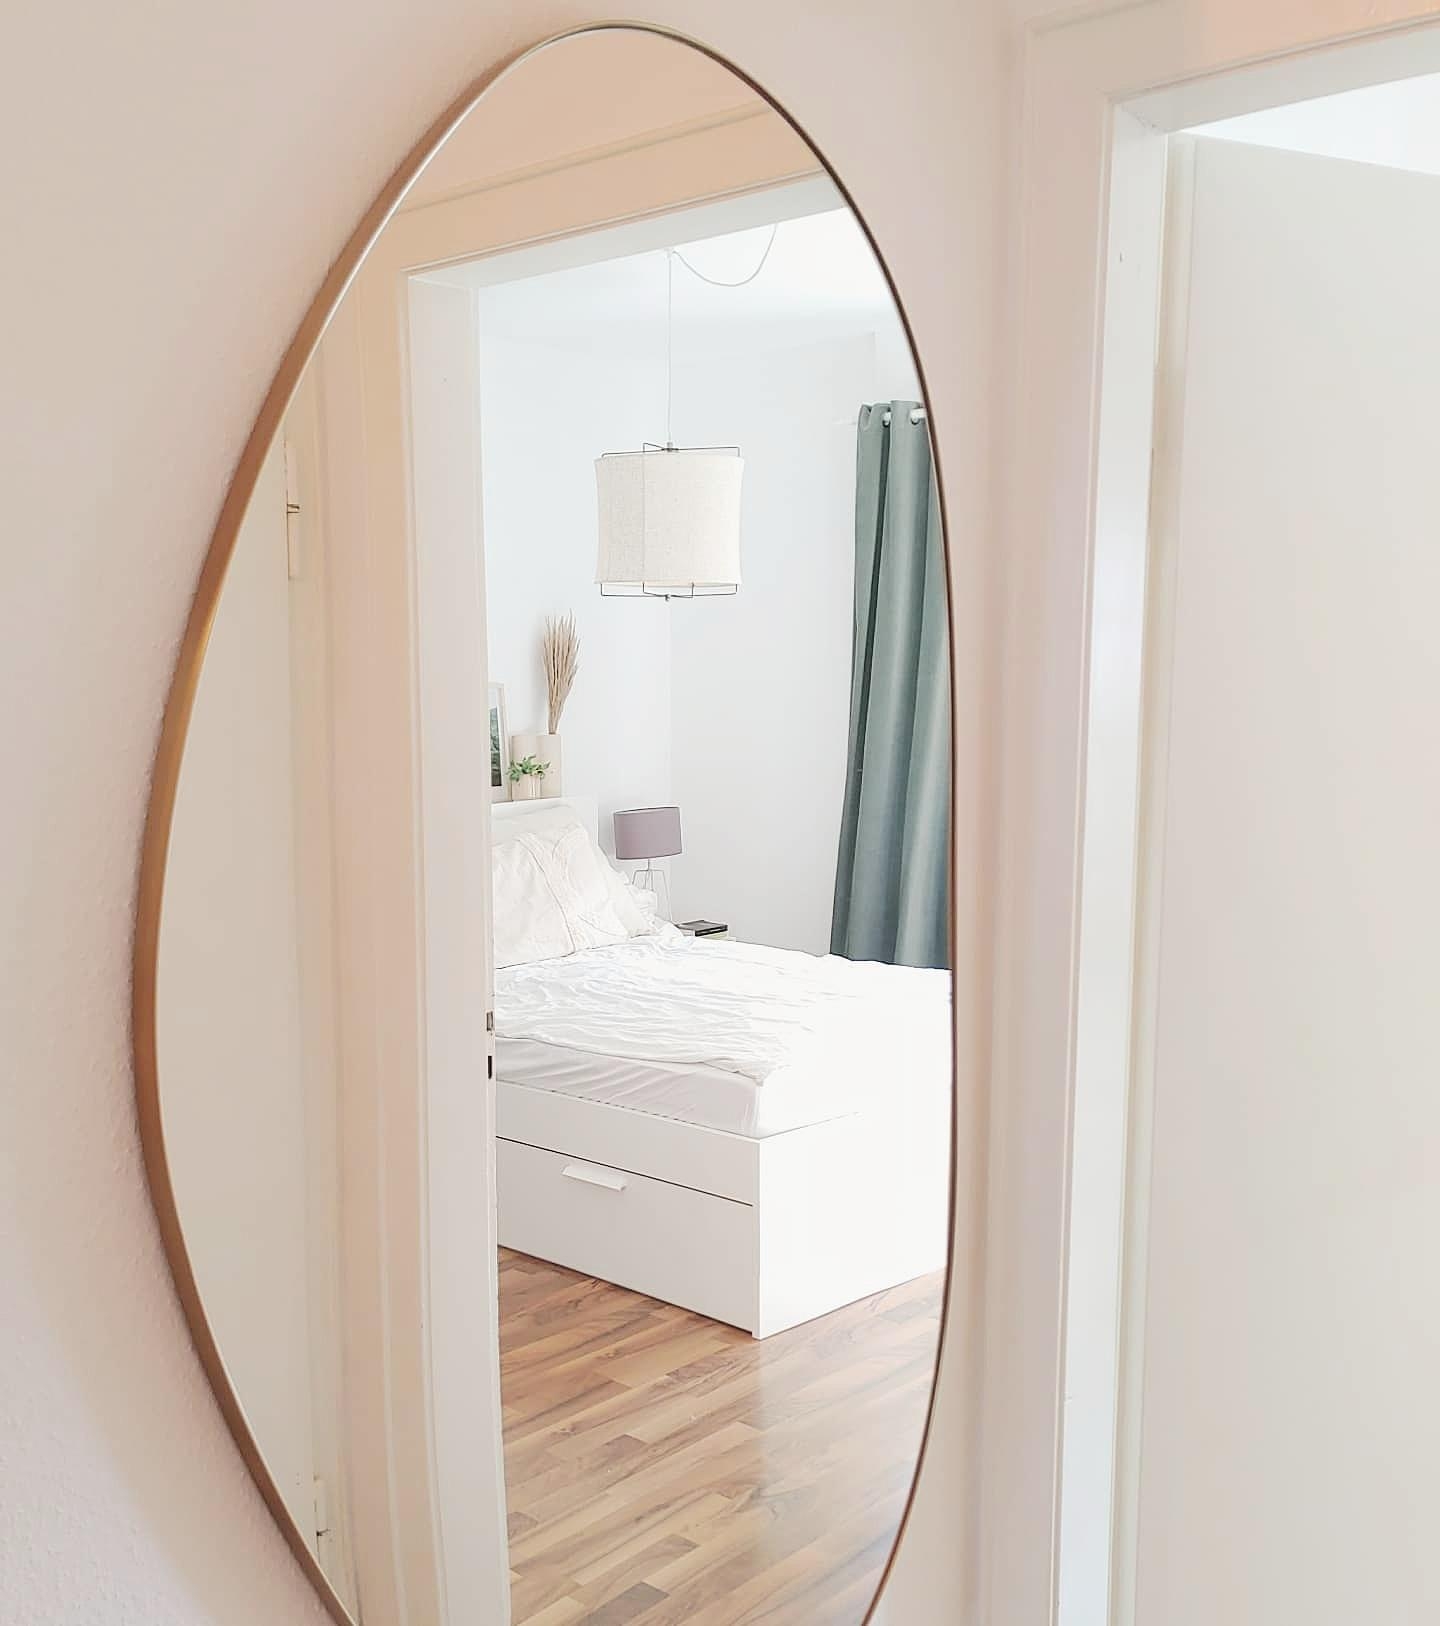 #spiegel #blickinsschlafzimmer #flur #wandgestaltung #scandi #boho #hygge #couchliebt #couchstyle